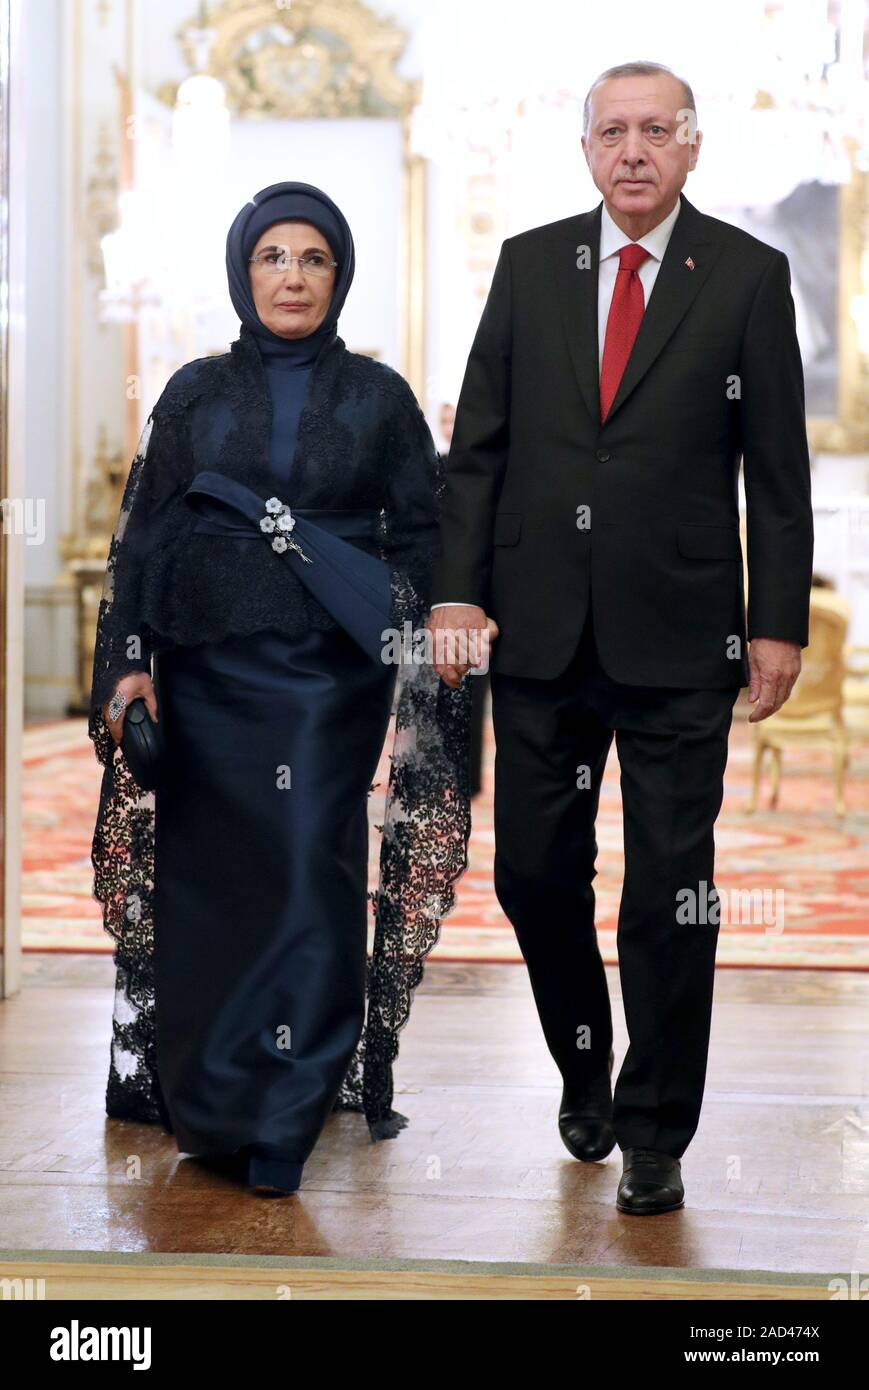 Türkischen Präsidenten Recep Tayyip Erdogan kommt mit seiner Frau Emine, bei einem Empfang im Buckingham Palace, London, als Staats- und Regierungschefs der NATO-Mitglieder sammeln bis 70 Jahre der Allianz. Stockfoto